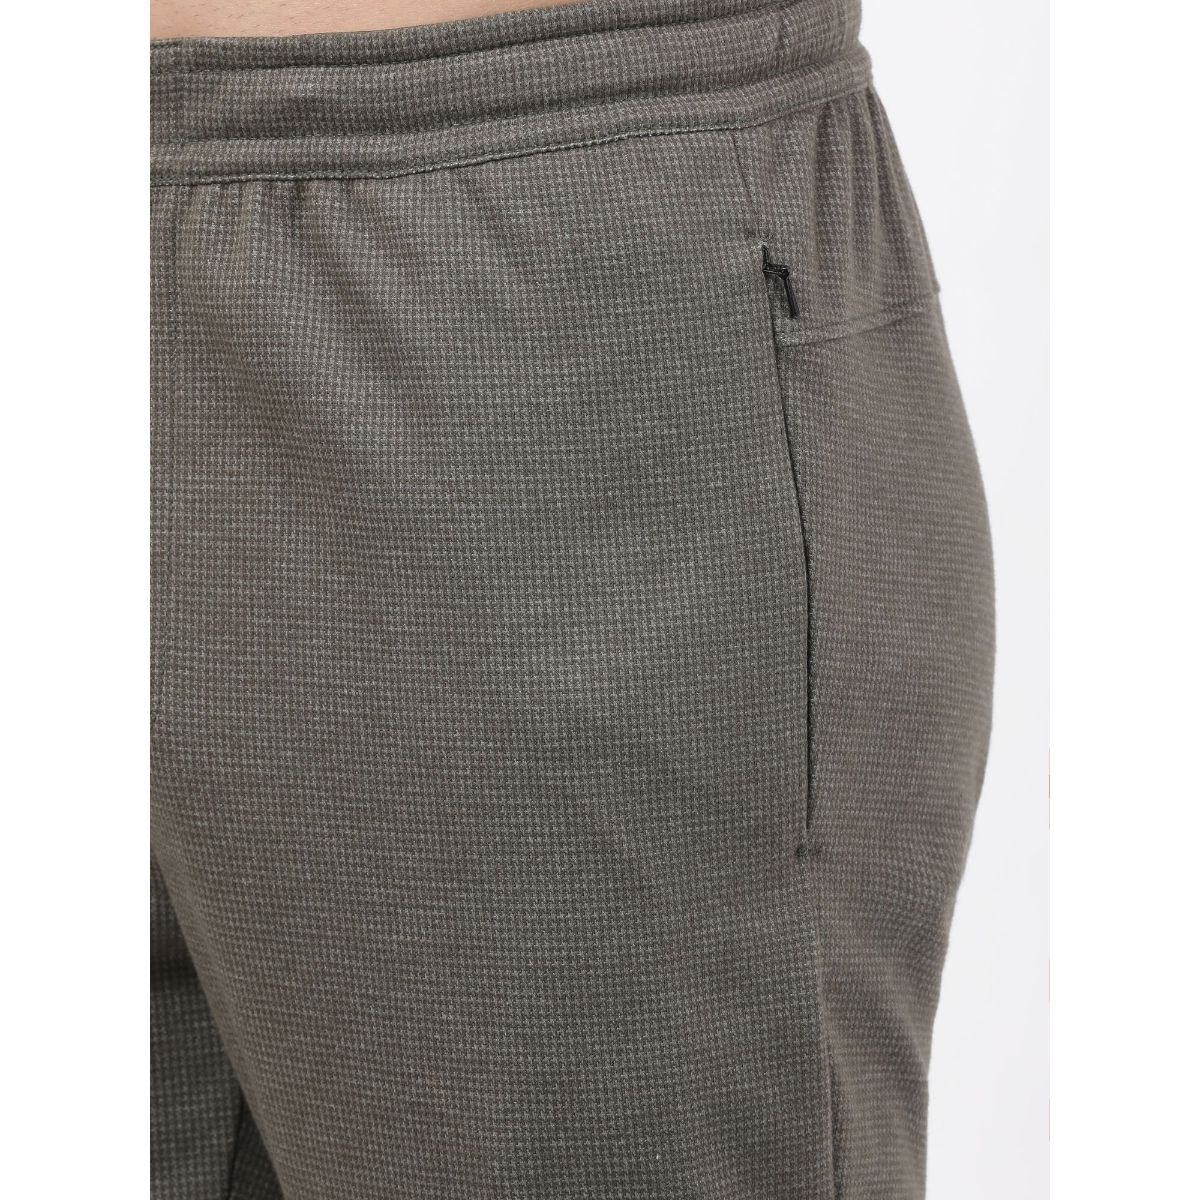 Buy Jet Black Trousers & Pants for Women by JOCKEY Online | Ajio.com